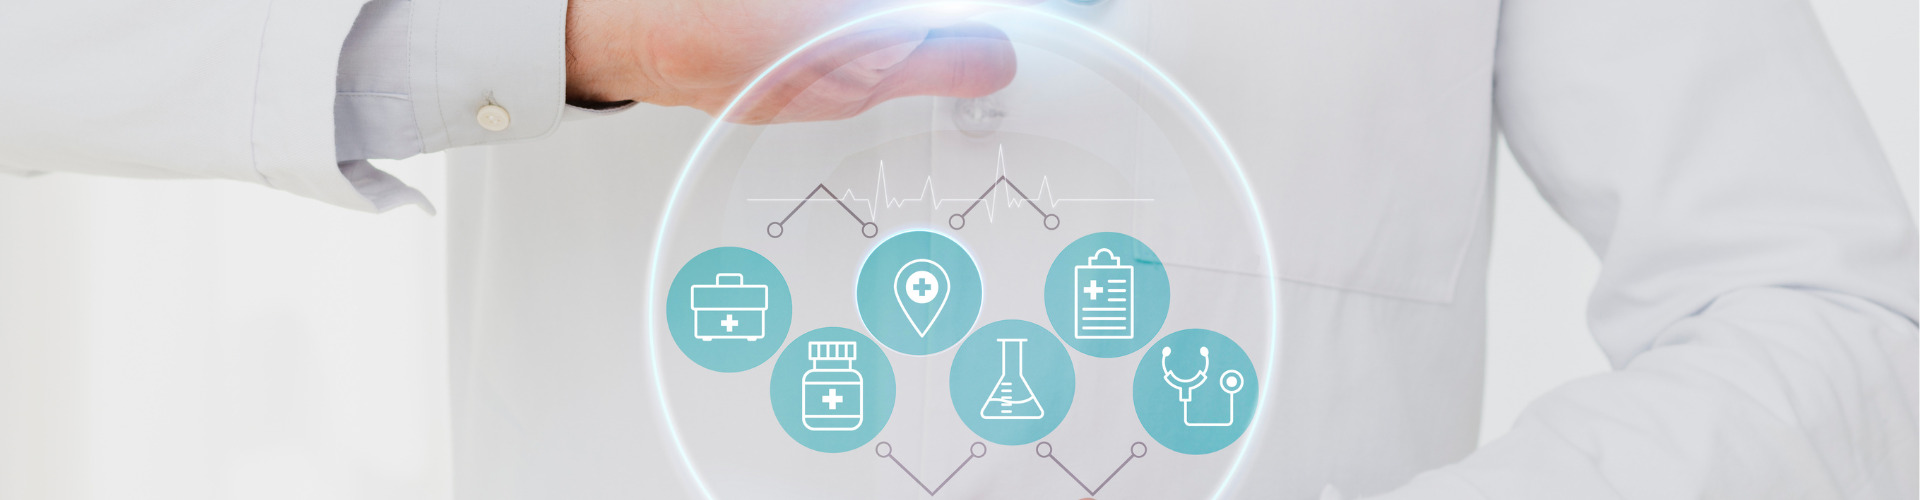 Healthtechs: 5 etapas essenciais para startups atuarem no setor regulado de saúde